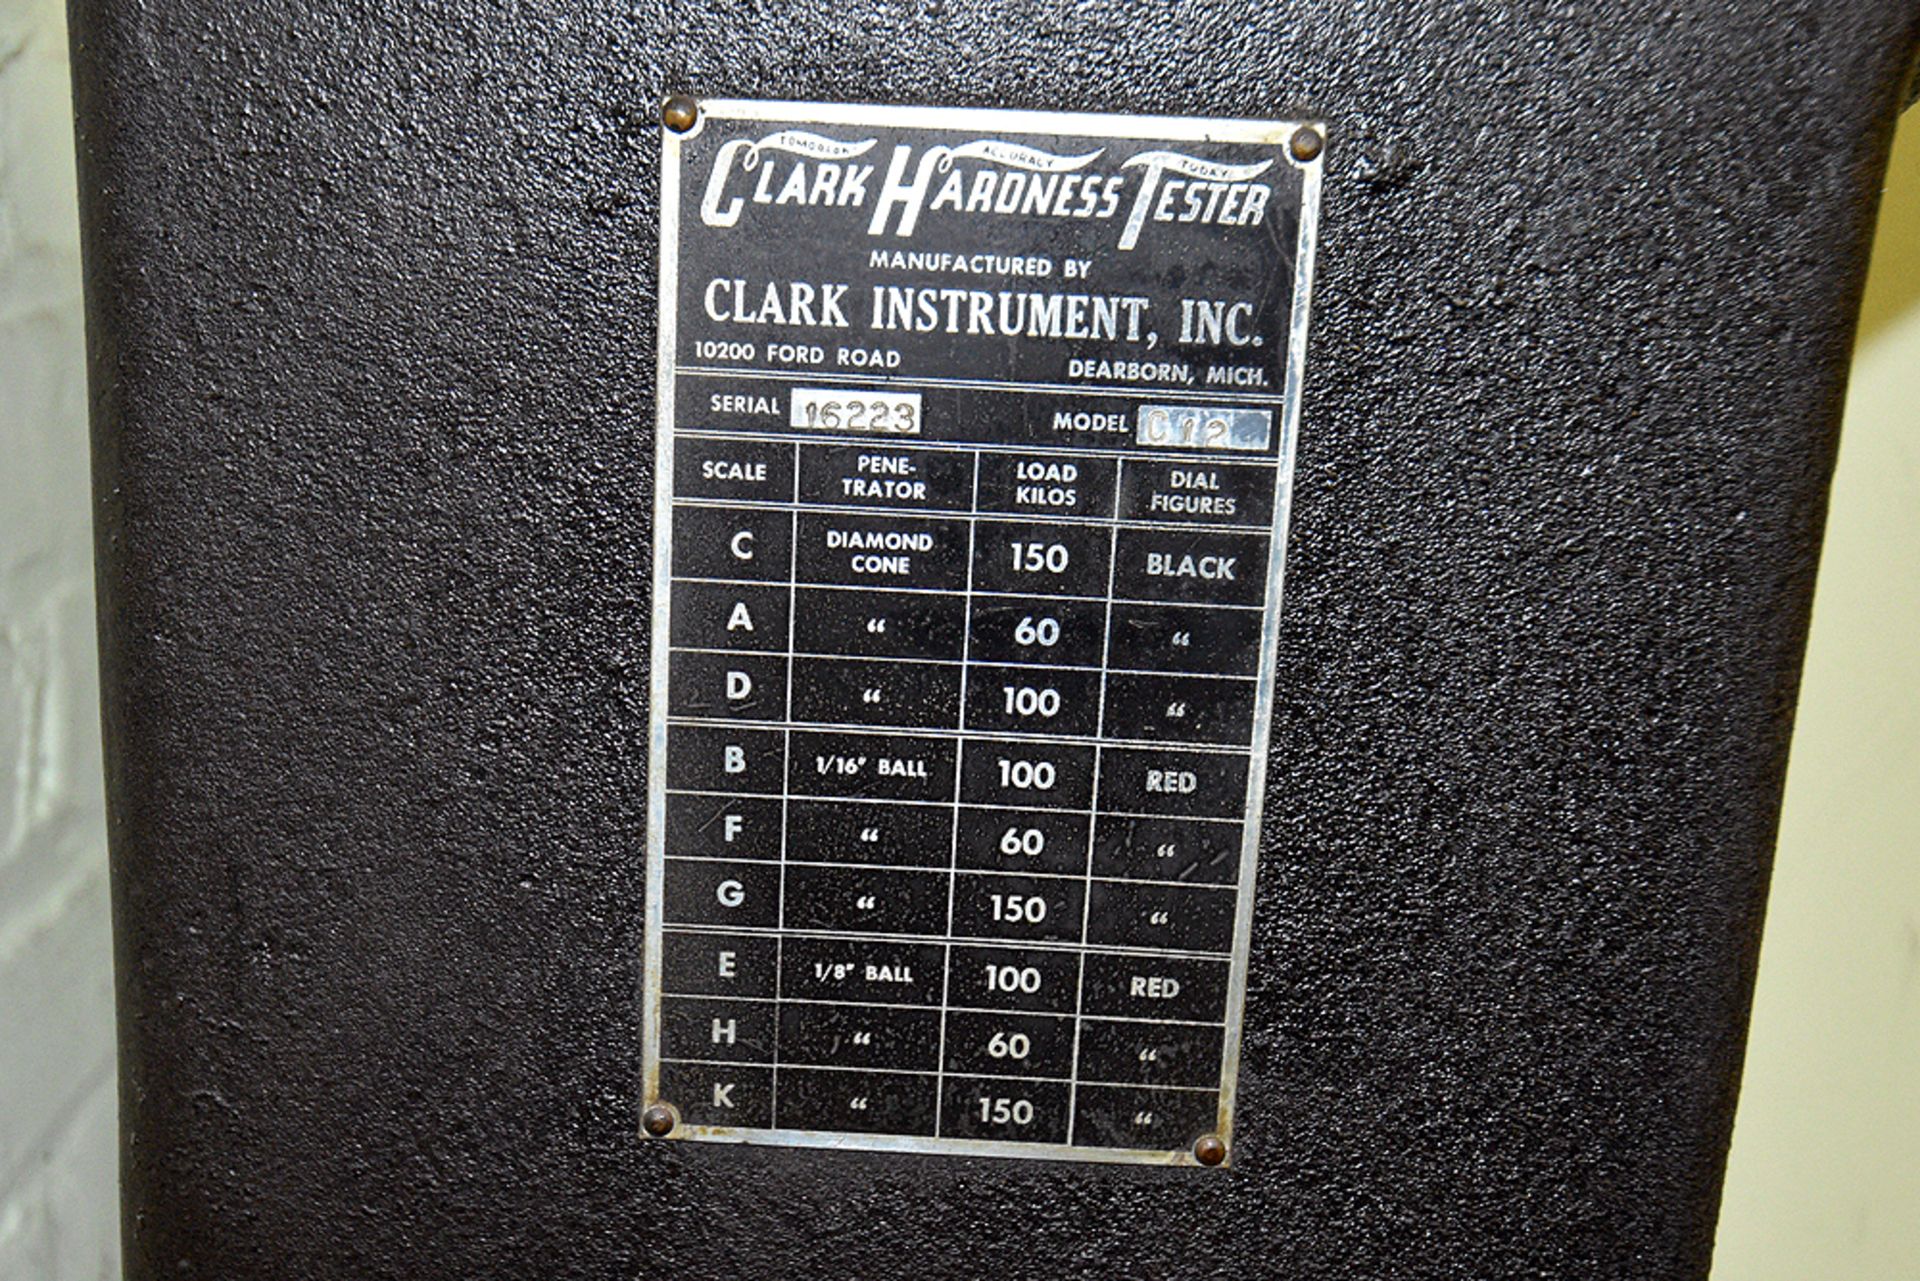 Clark Hardness Tester Model C12 Serial Number: 16223 w/ Base Cabinet - Image 3 of 6